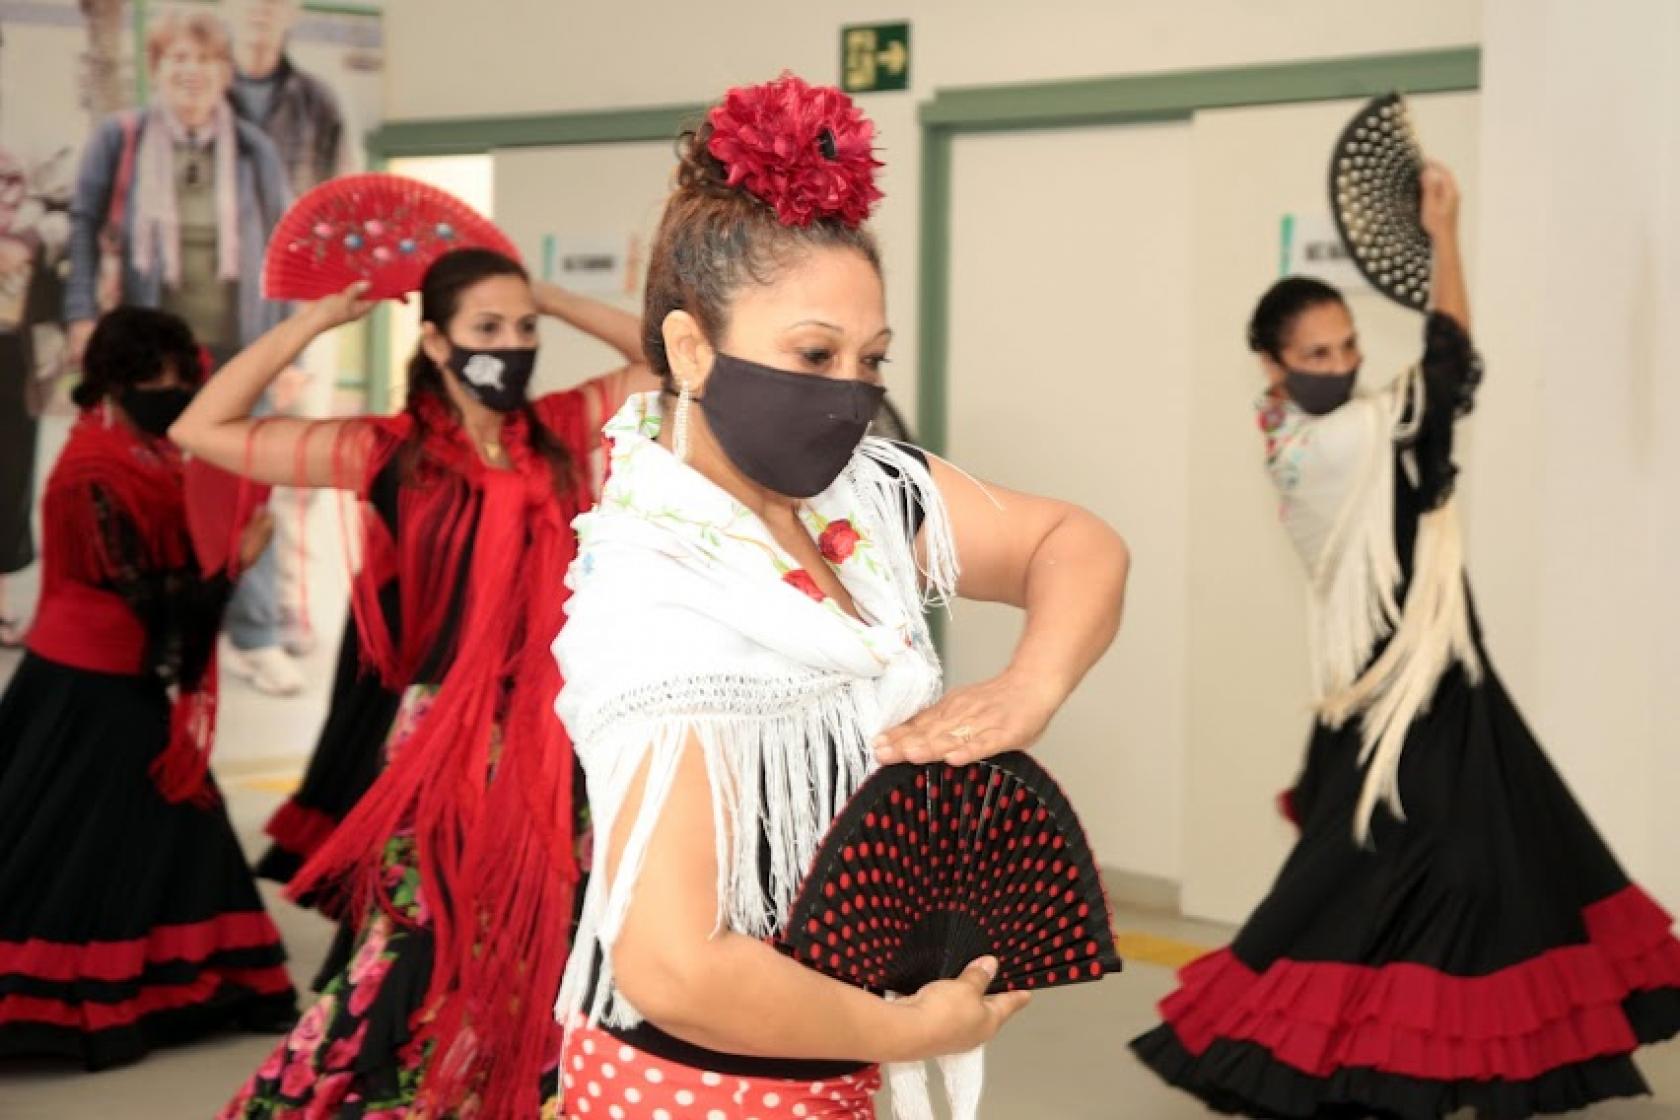 close de mulher dançando flamenco, com roupa típica, o que inclui xale nos ombros, saia rodada e flor na cabeça, além de um leque aberto nas mãos. Atrás há outras mulheres também dançando. #paratodosverem